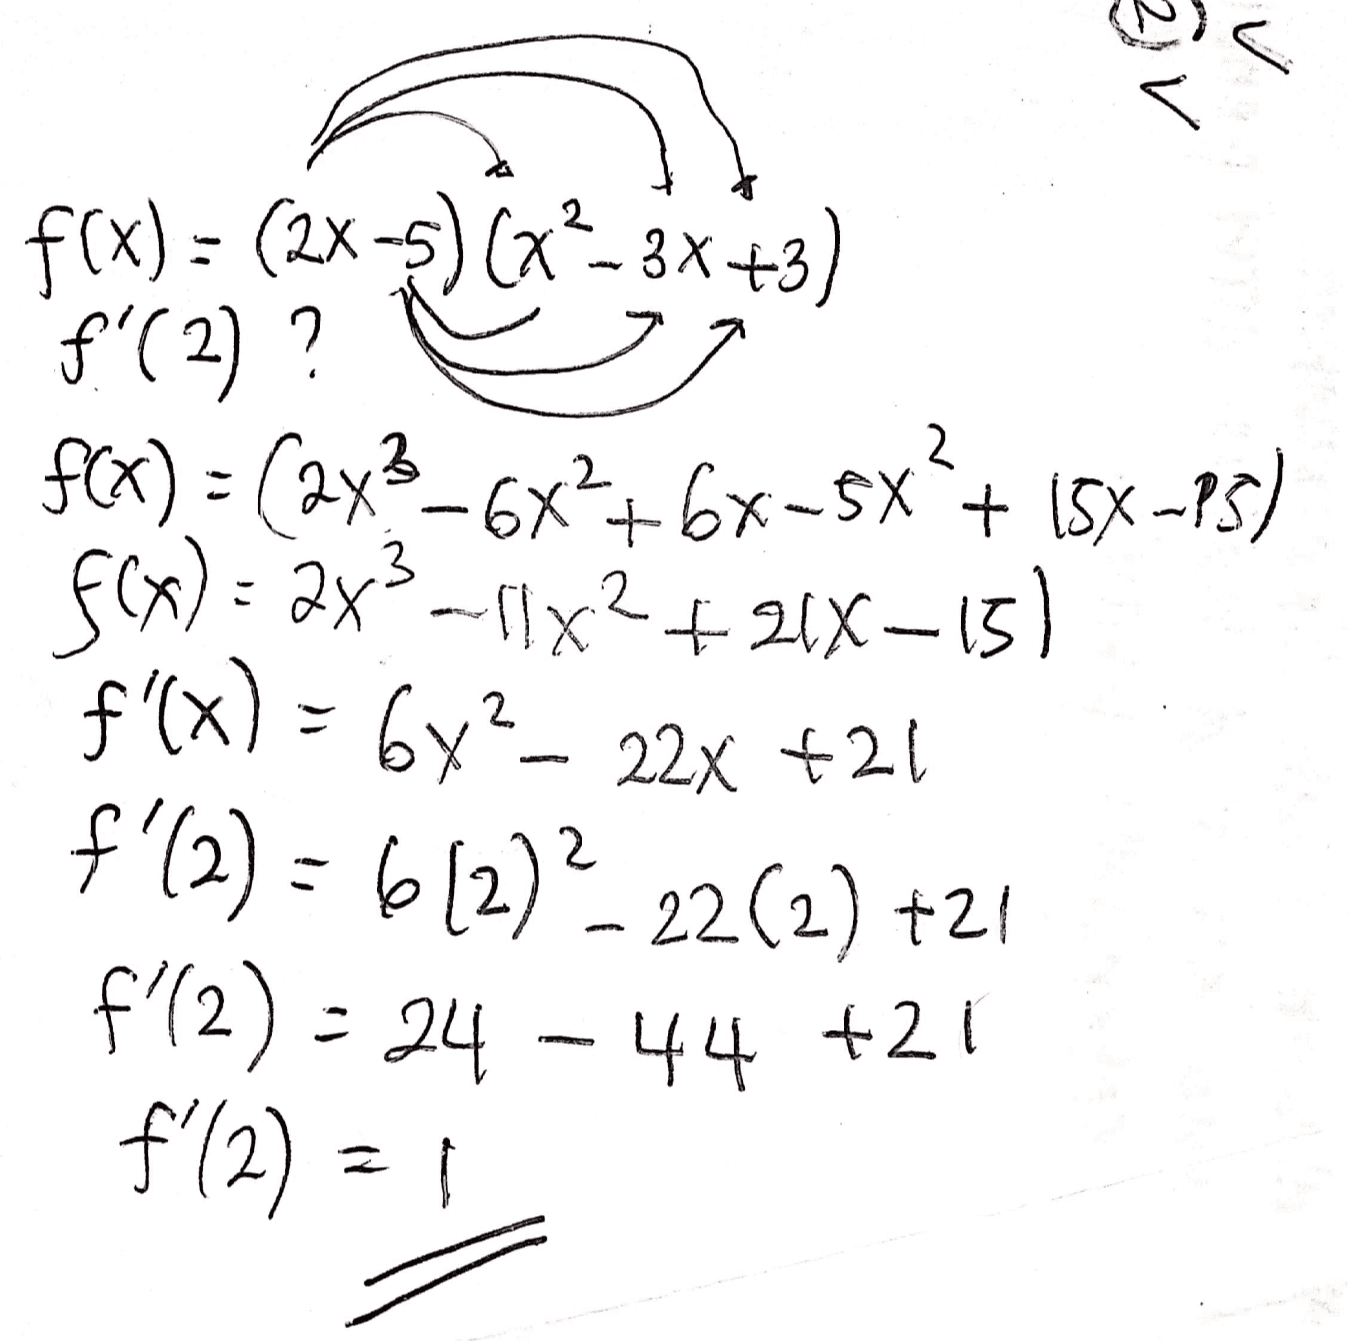 V av f(x) = (2x3)(x2-3x+3) f'(2) ? $(X) = (2x3-6x2+6x-5X?+ 15%-25) f(x) = 2x3-11X2 +218–15) f'(x) = 6y?- 22X +21 f'(2) = 6 (2) - 22(2) +20 f'(2) - 24 f'(2)-1 44 +21 